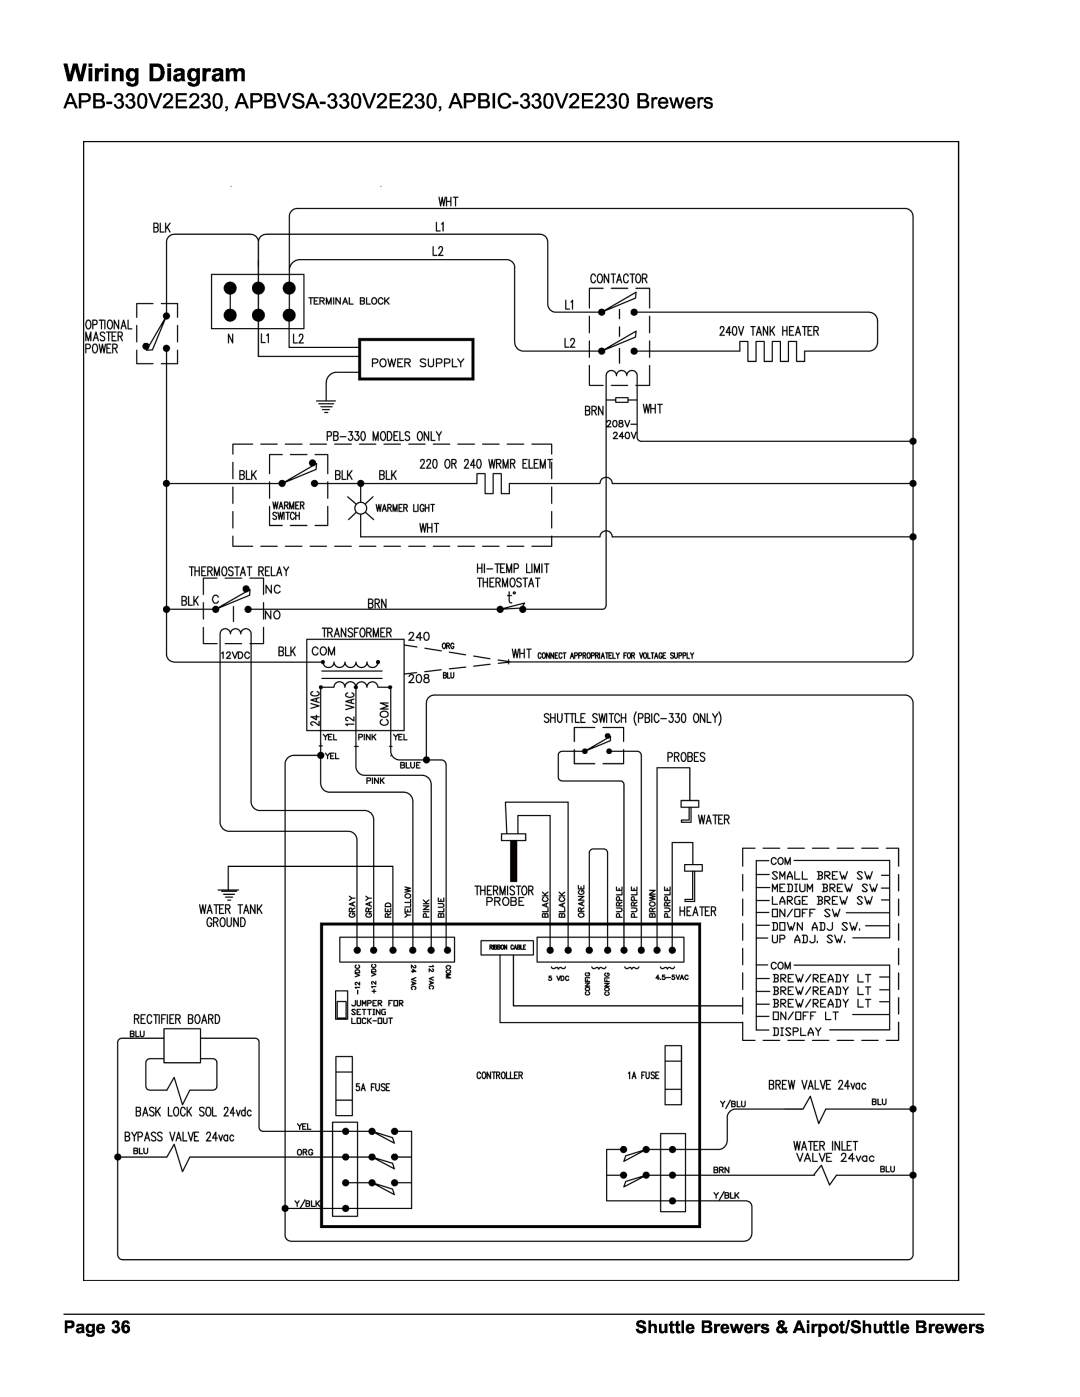 Grindmaster APBIC-430V2, APBVSA-430V2 APB-330V2E230, APBVSA-330V2E230, APBIC-330V2E230 Brewers, Wiring Diagram, Page 